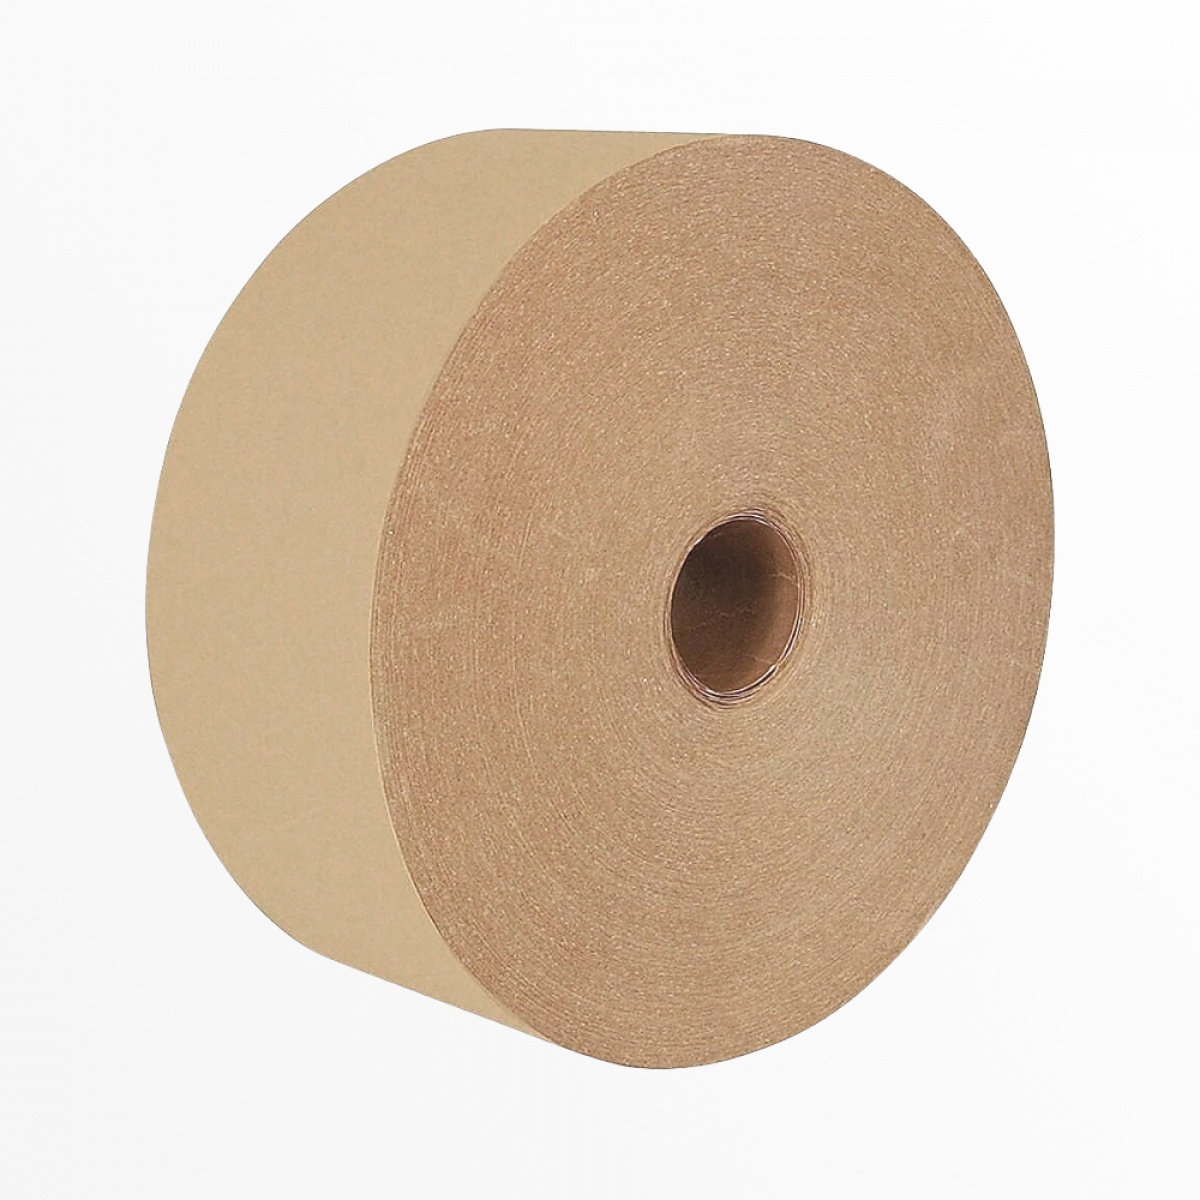 Hnedá papierová lepiaca páska s vodou-aktivovateľným lepidlom